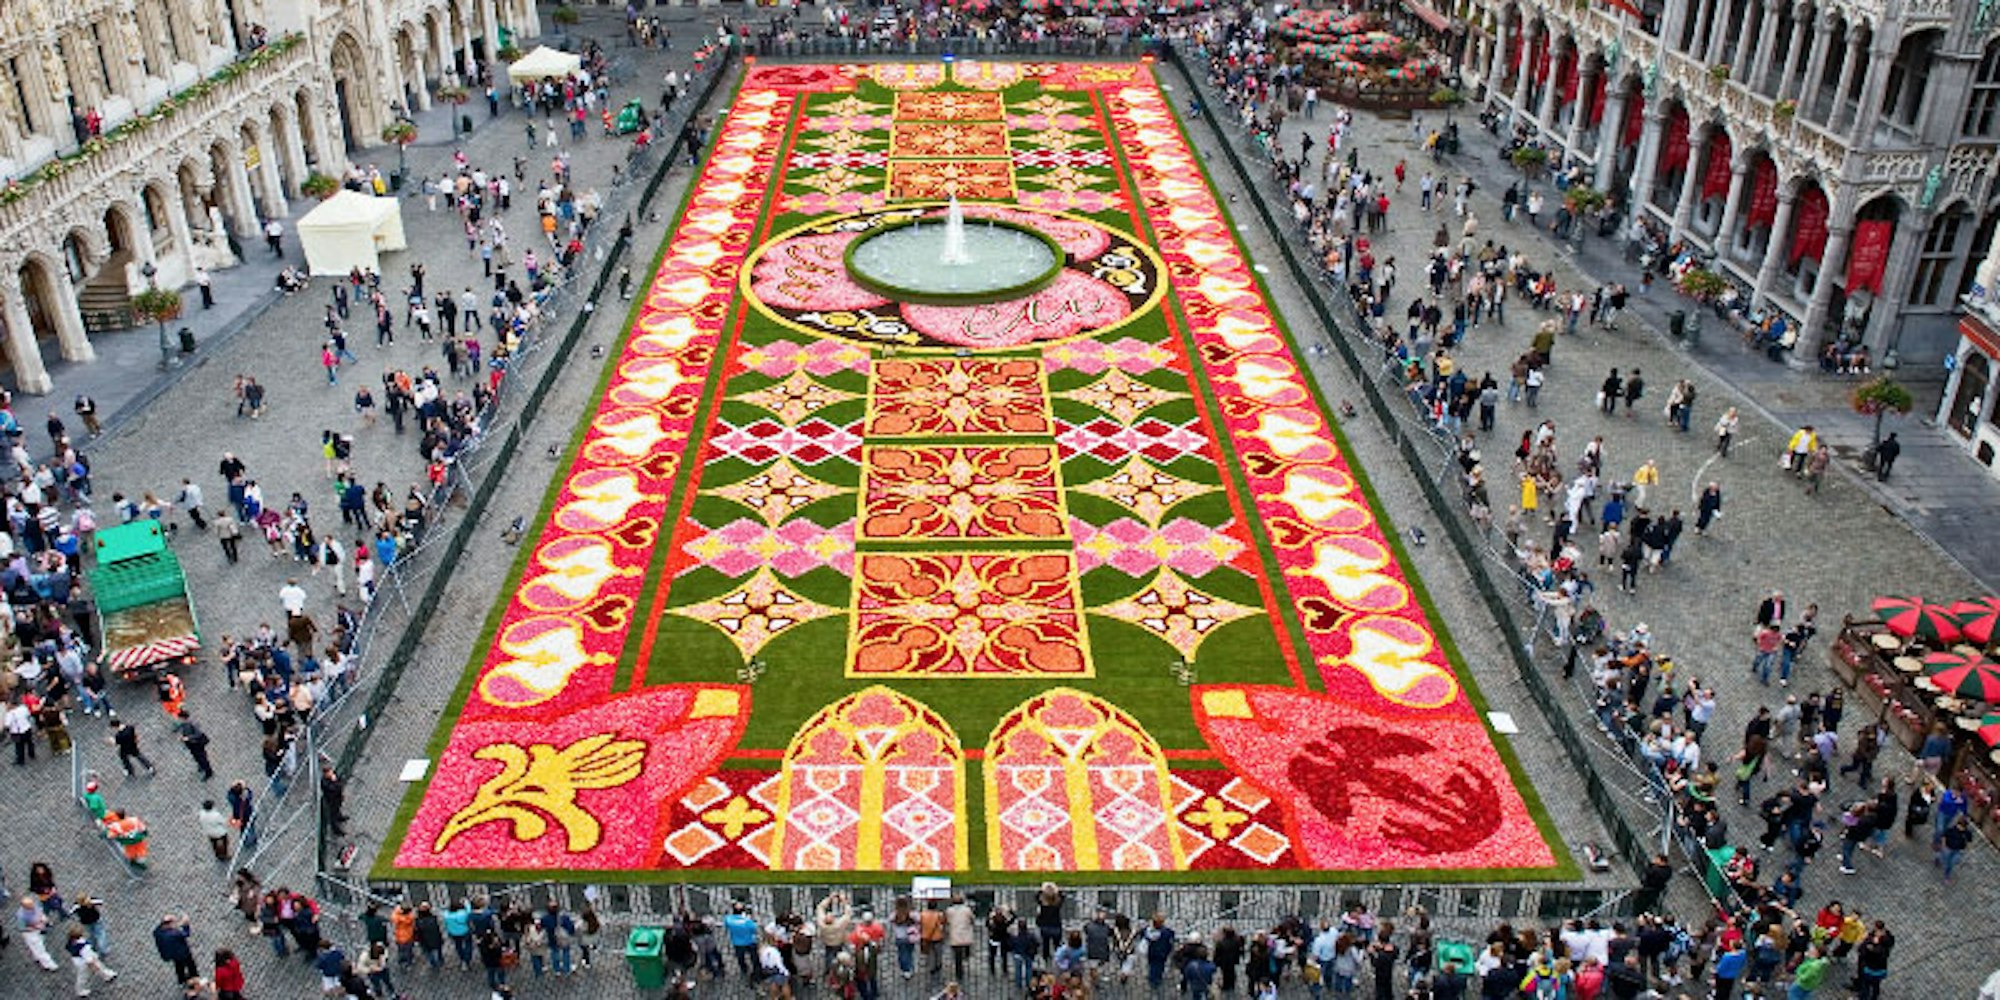 Der Blumenteppich in Brüssel verzaubert mit seinen leuchtenden Farben.